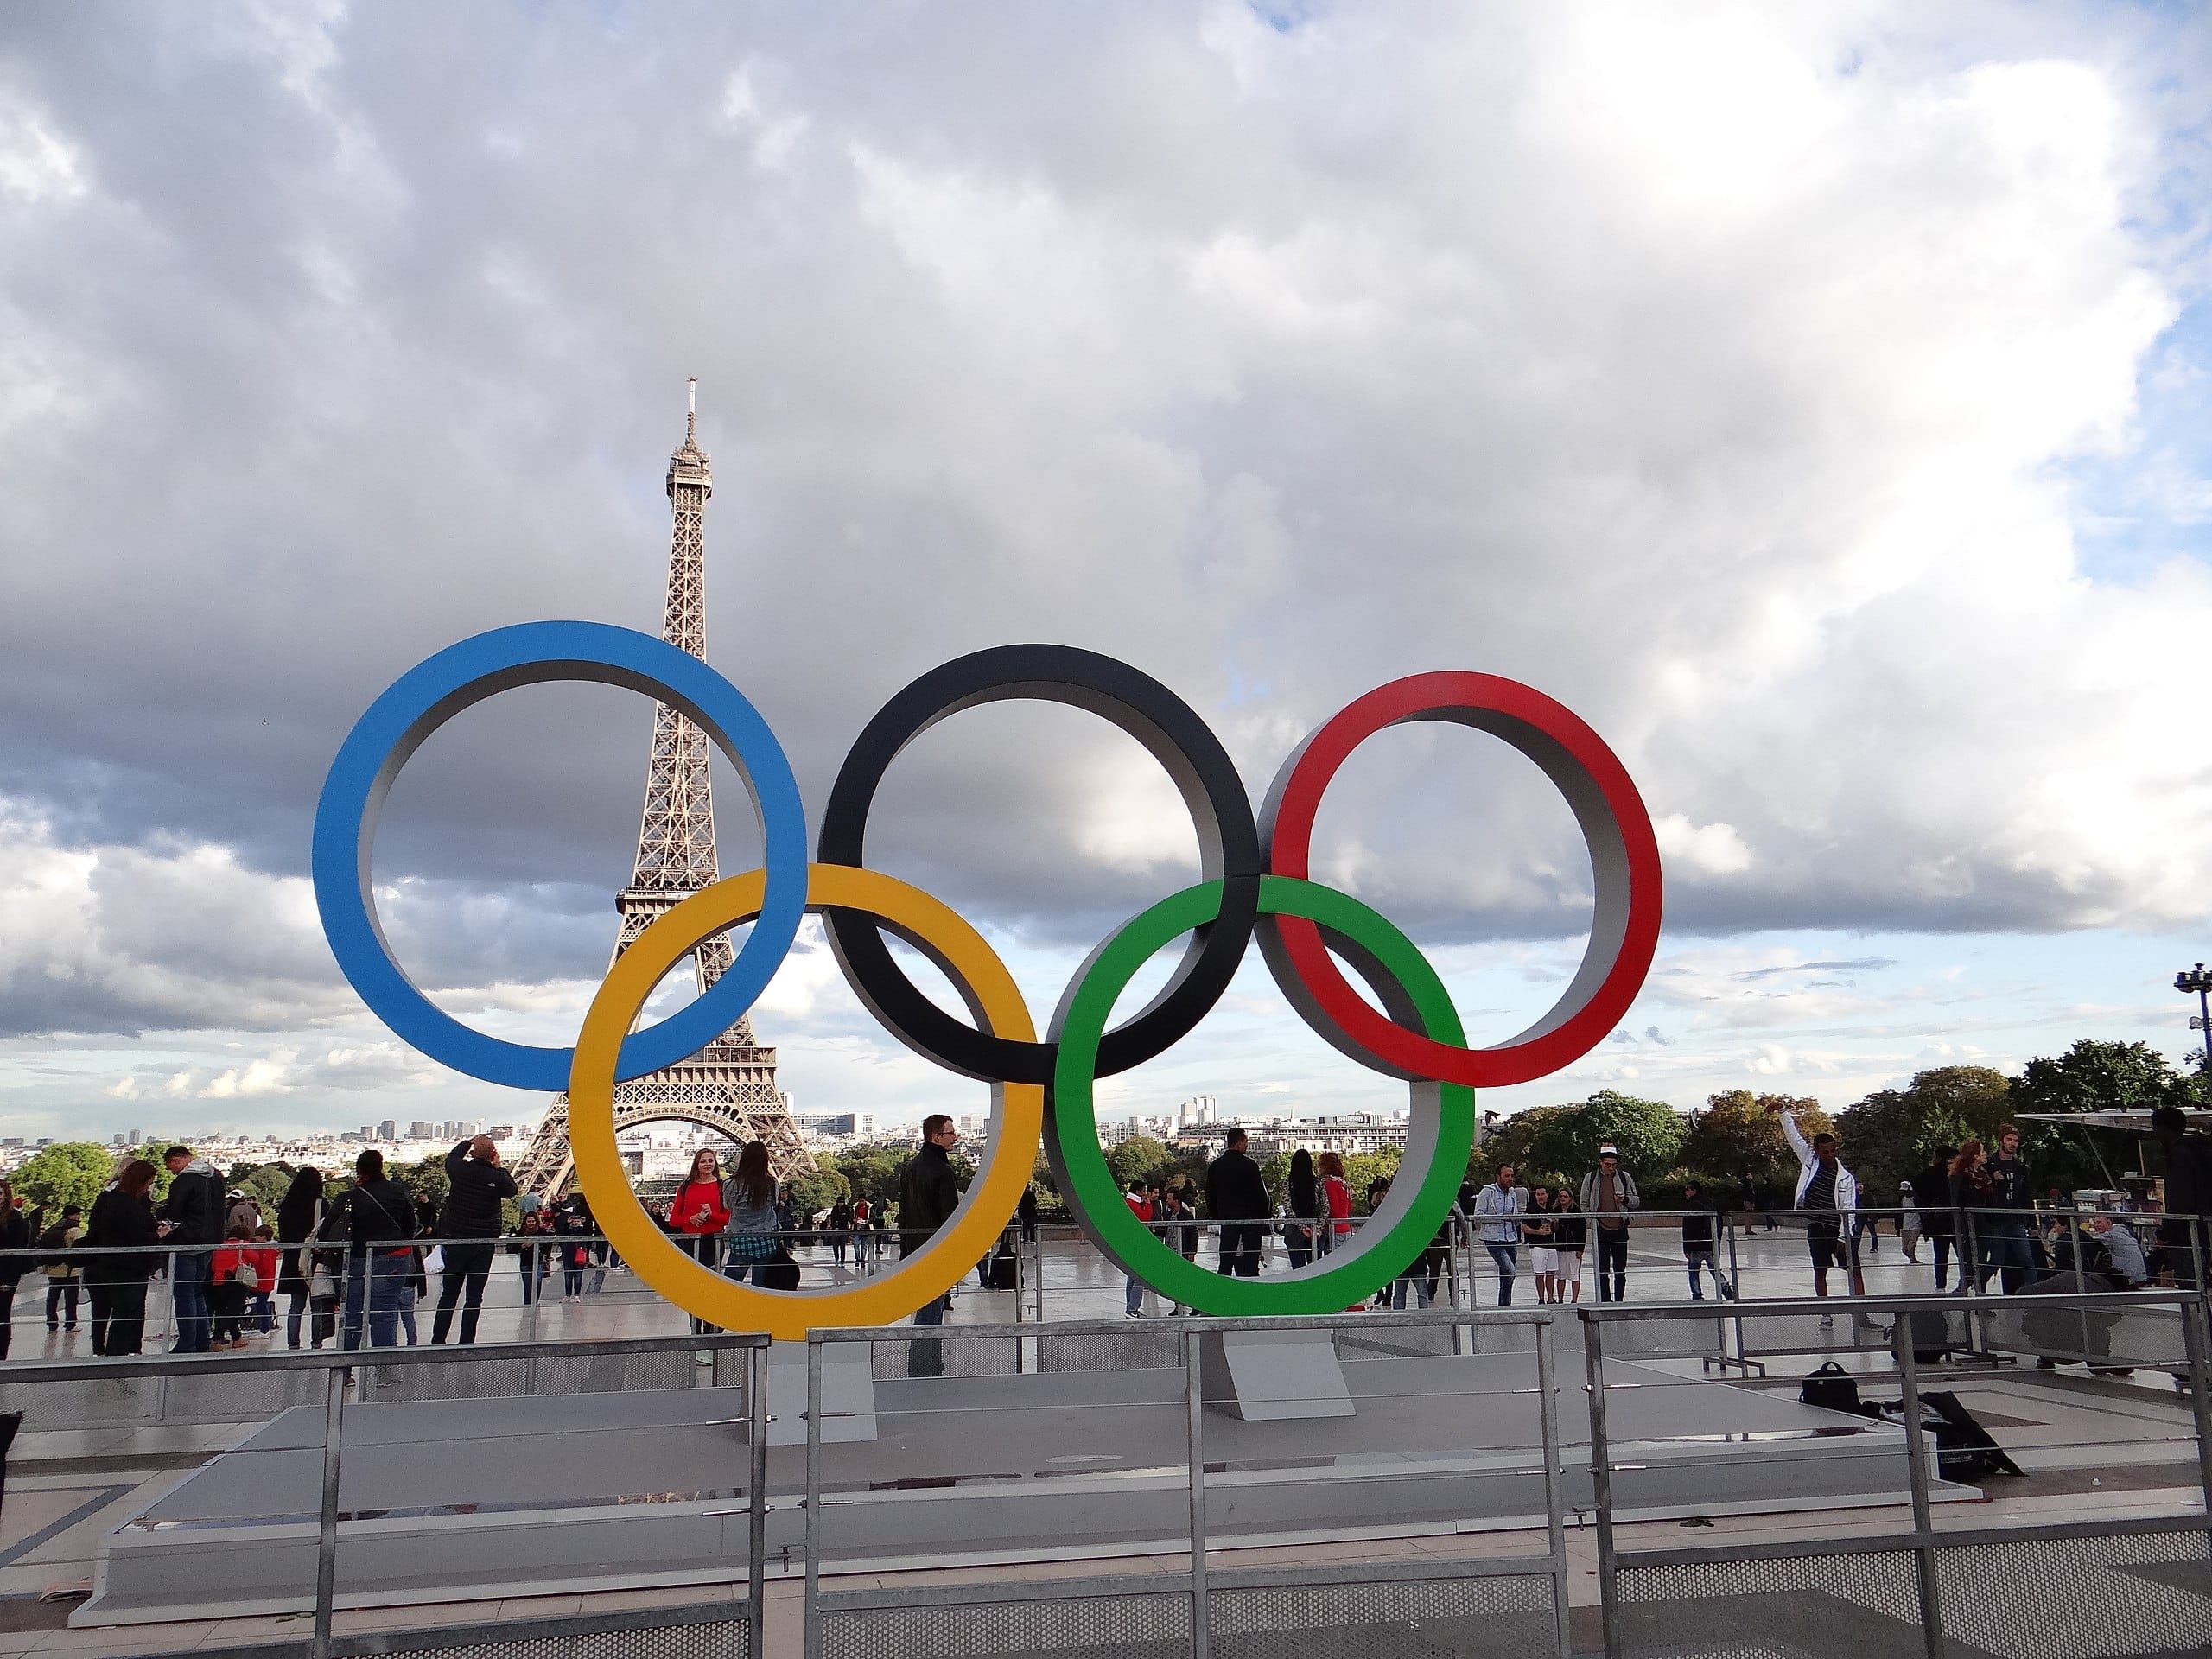 Les anneaux olympiques exposés place du Trocadéro en 2017 pour célébrer l'attribution des Jeux à Paris. (C) Wikipédia